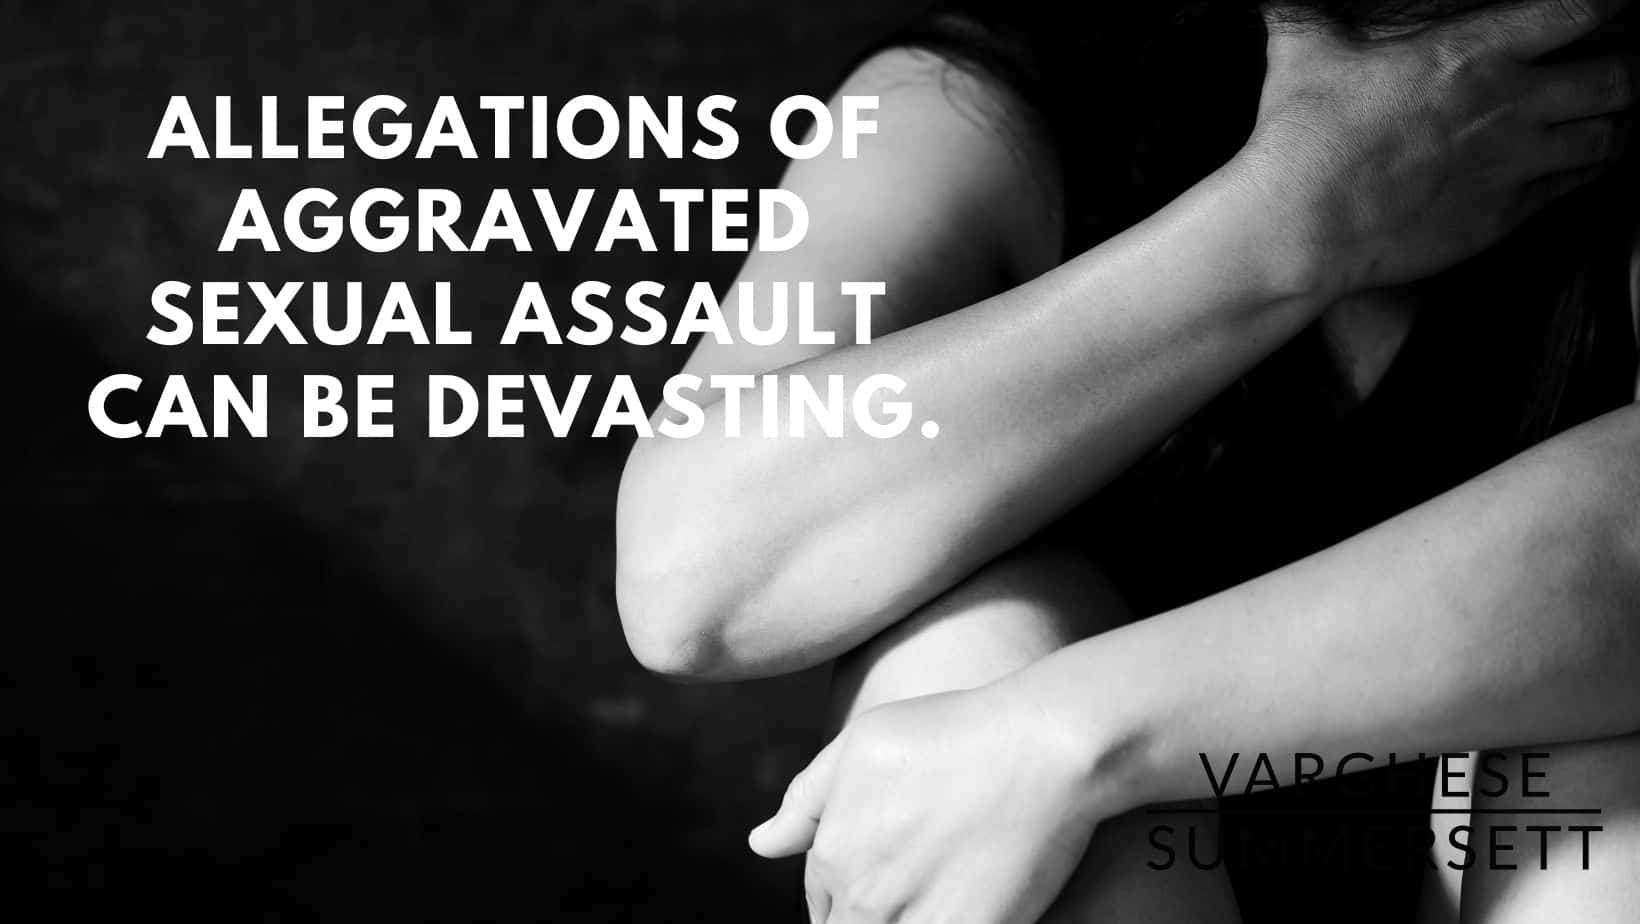 las acusaciones de agresión sexual con agravantes pueden ser devastadoras